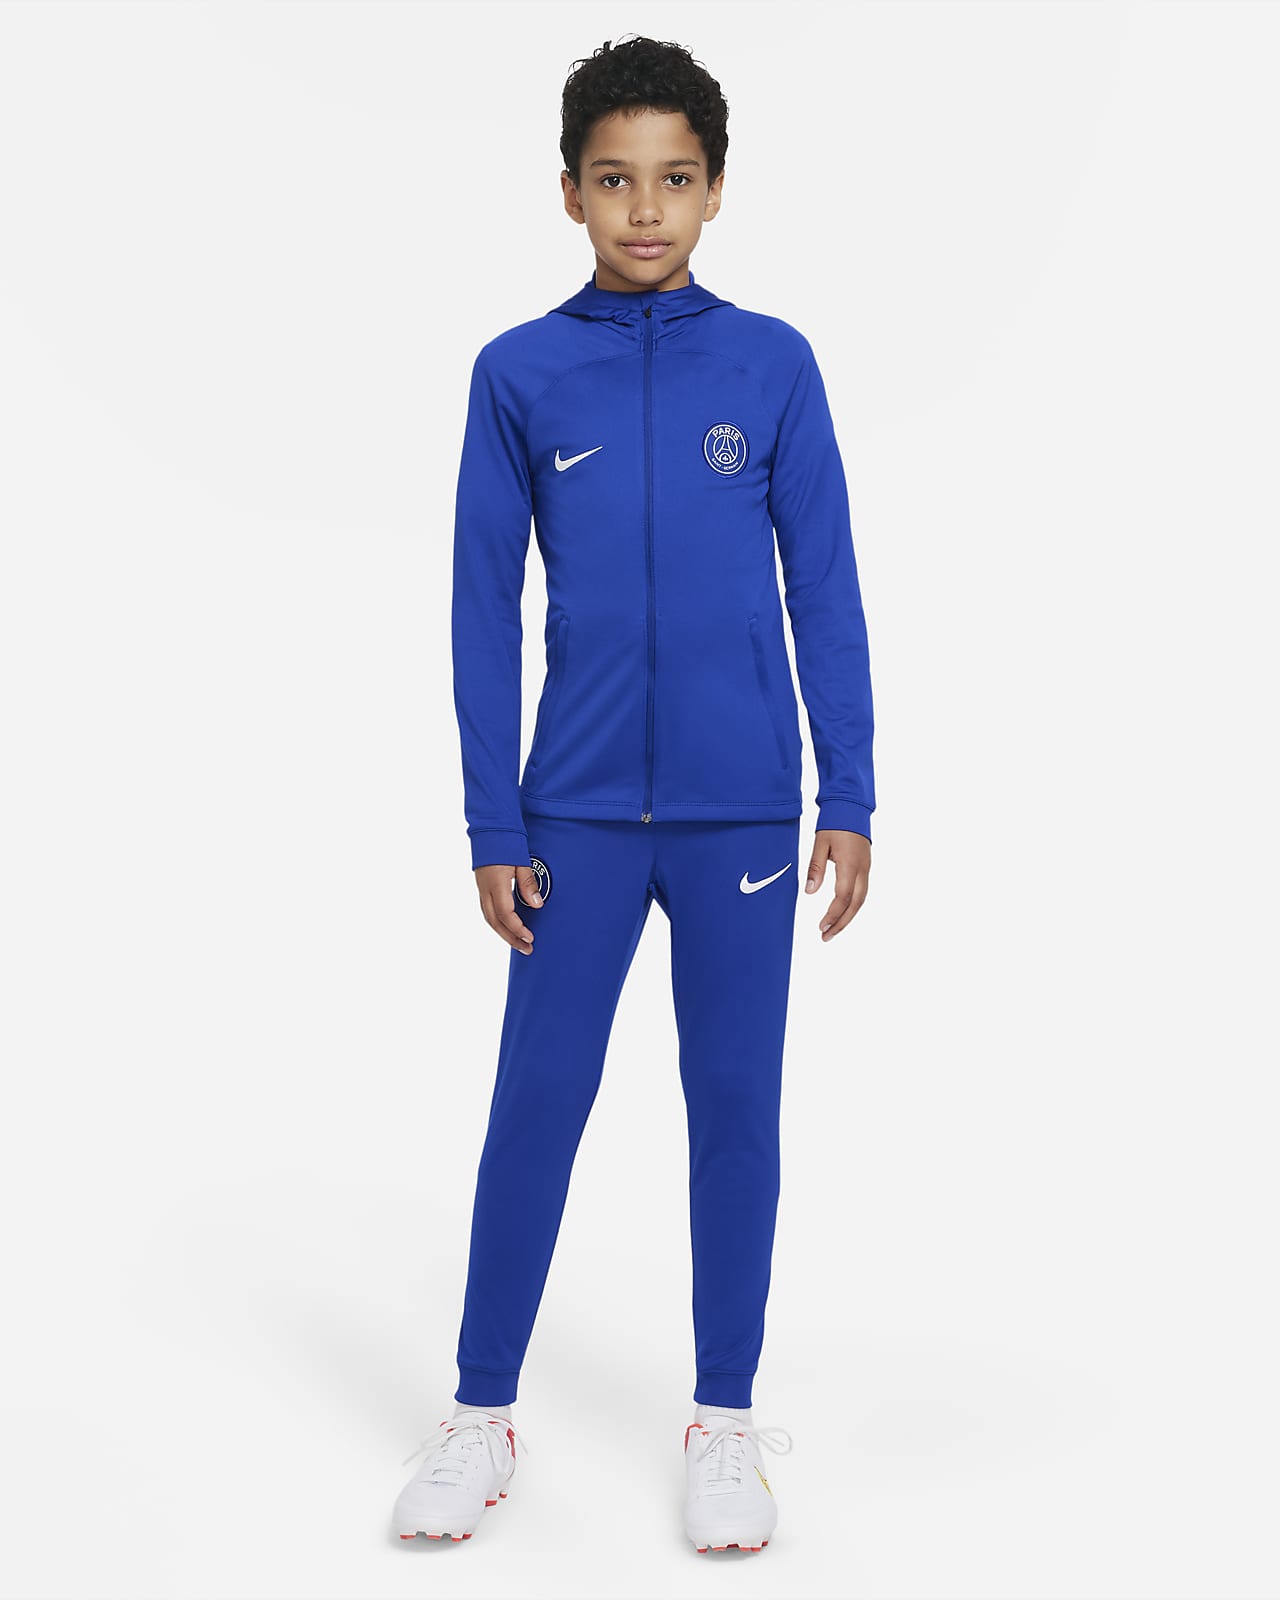 Paris Strike Nike Dri-FIT voetbaltrainingspak capuchon voor kids. Nike BE